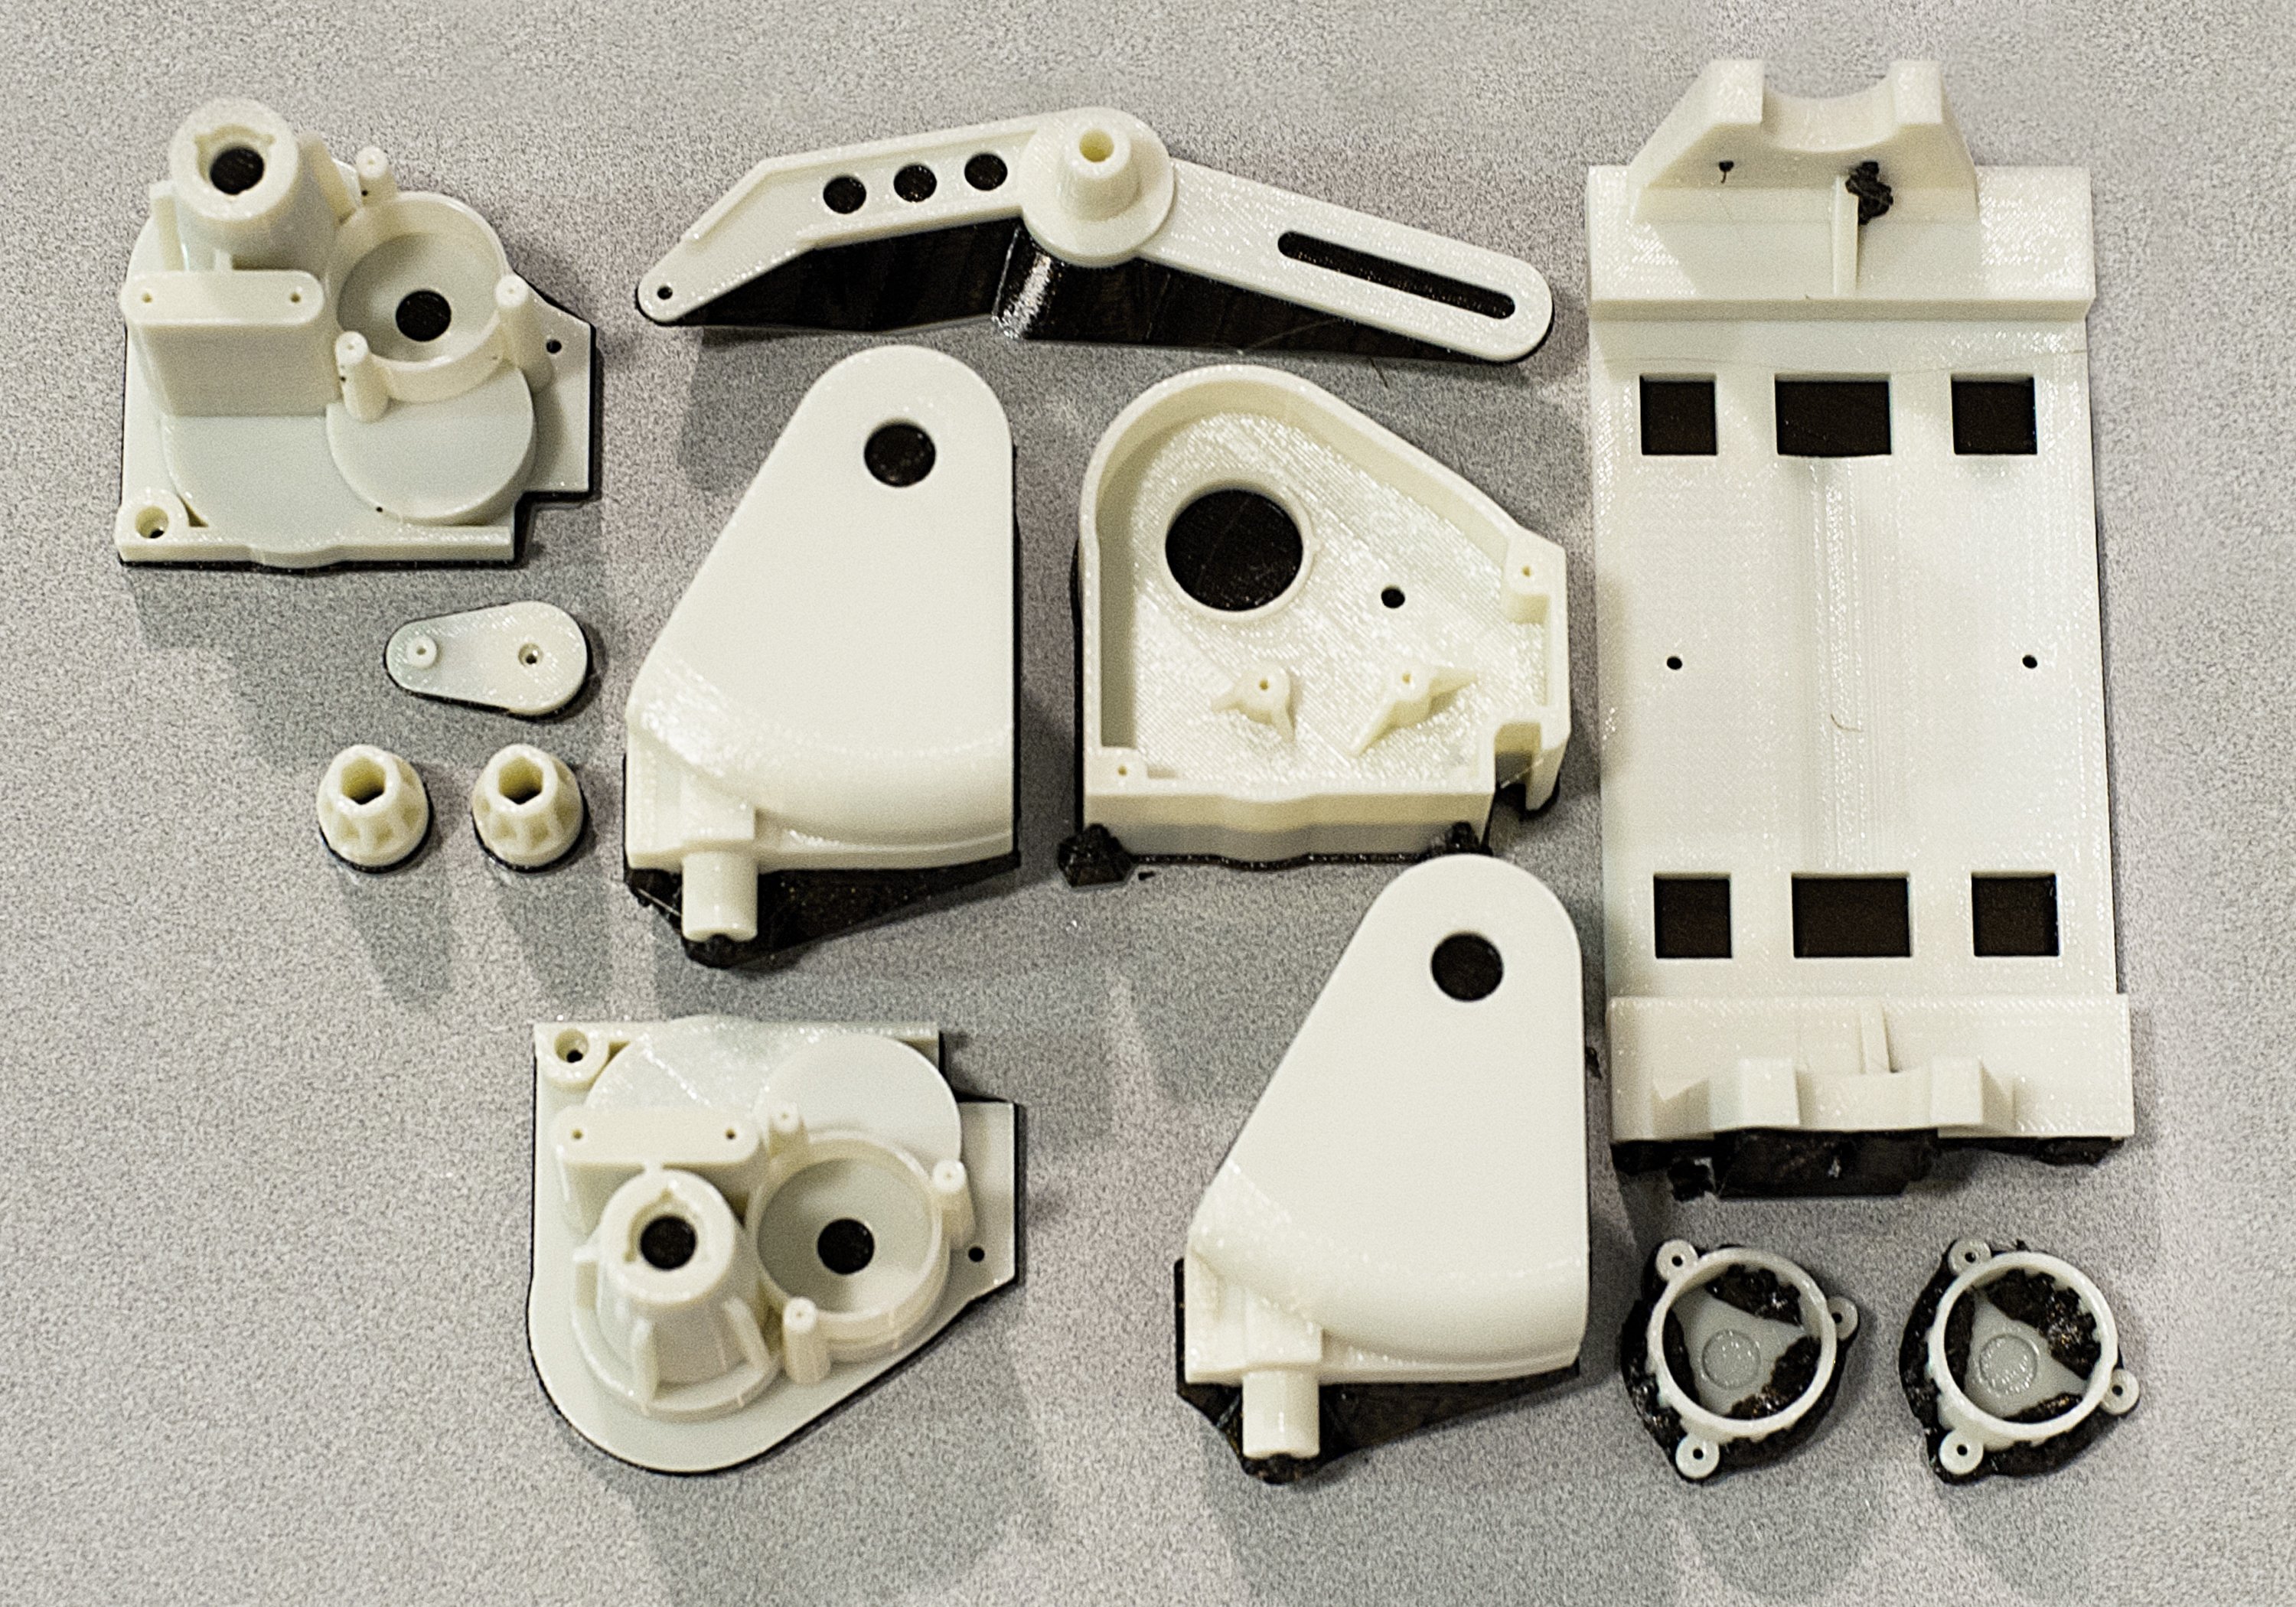 ABS Prototype Plastic parts